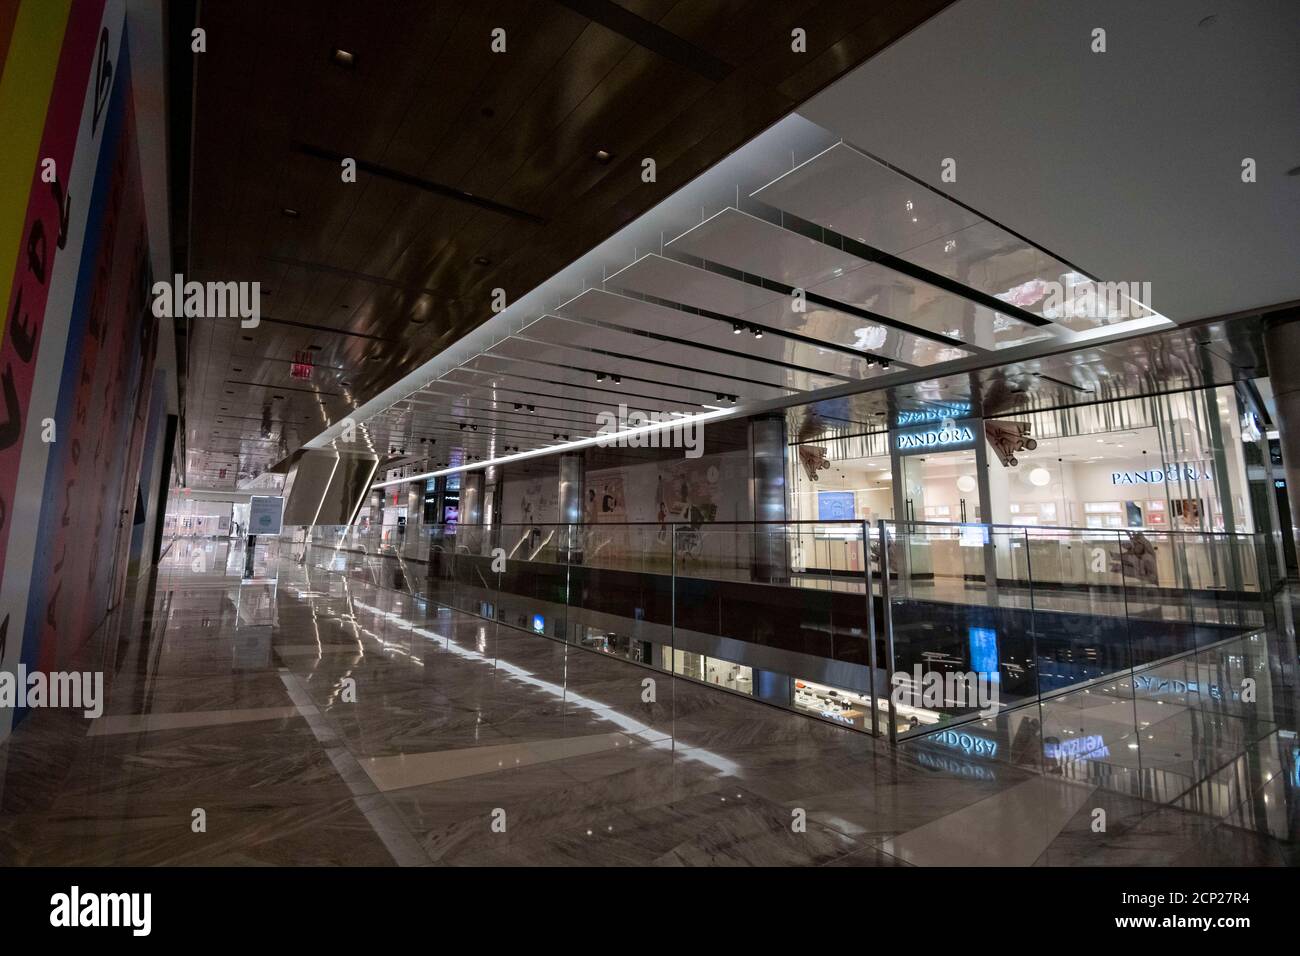 Manhattan, New York, États-Unis. 18 septembre 2020. Vue d'ensemble des couloirs vides des boutiques de Hudson yards en milieu de journée à Manhattan, New York. Crédit obligatoire : Kostas Lymperopoulos/CSM/Alay Live News Banque D'Images